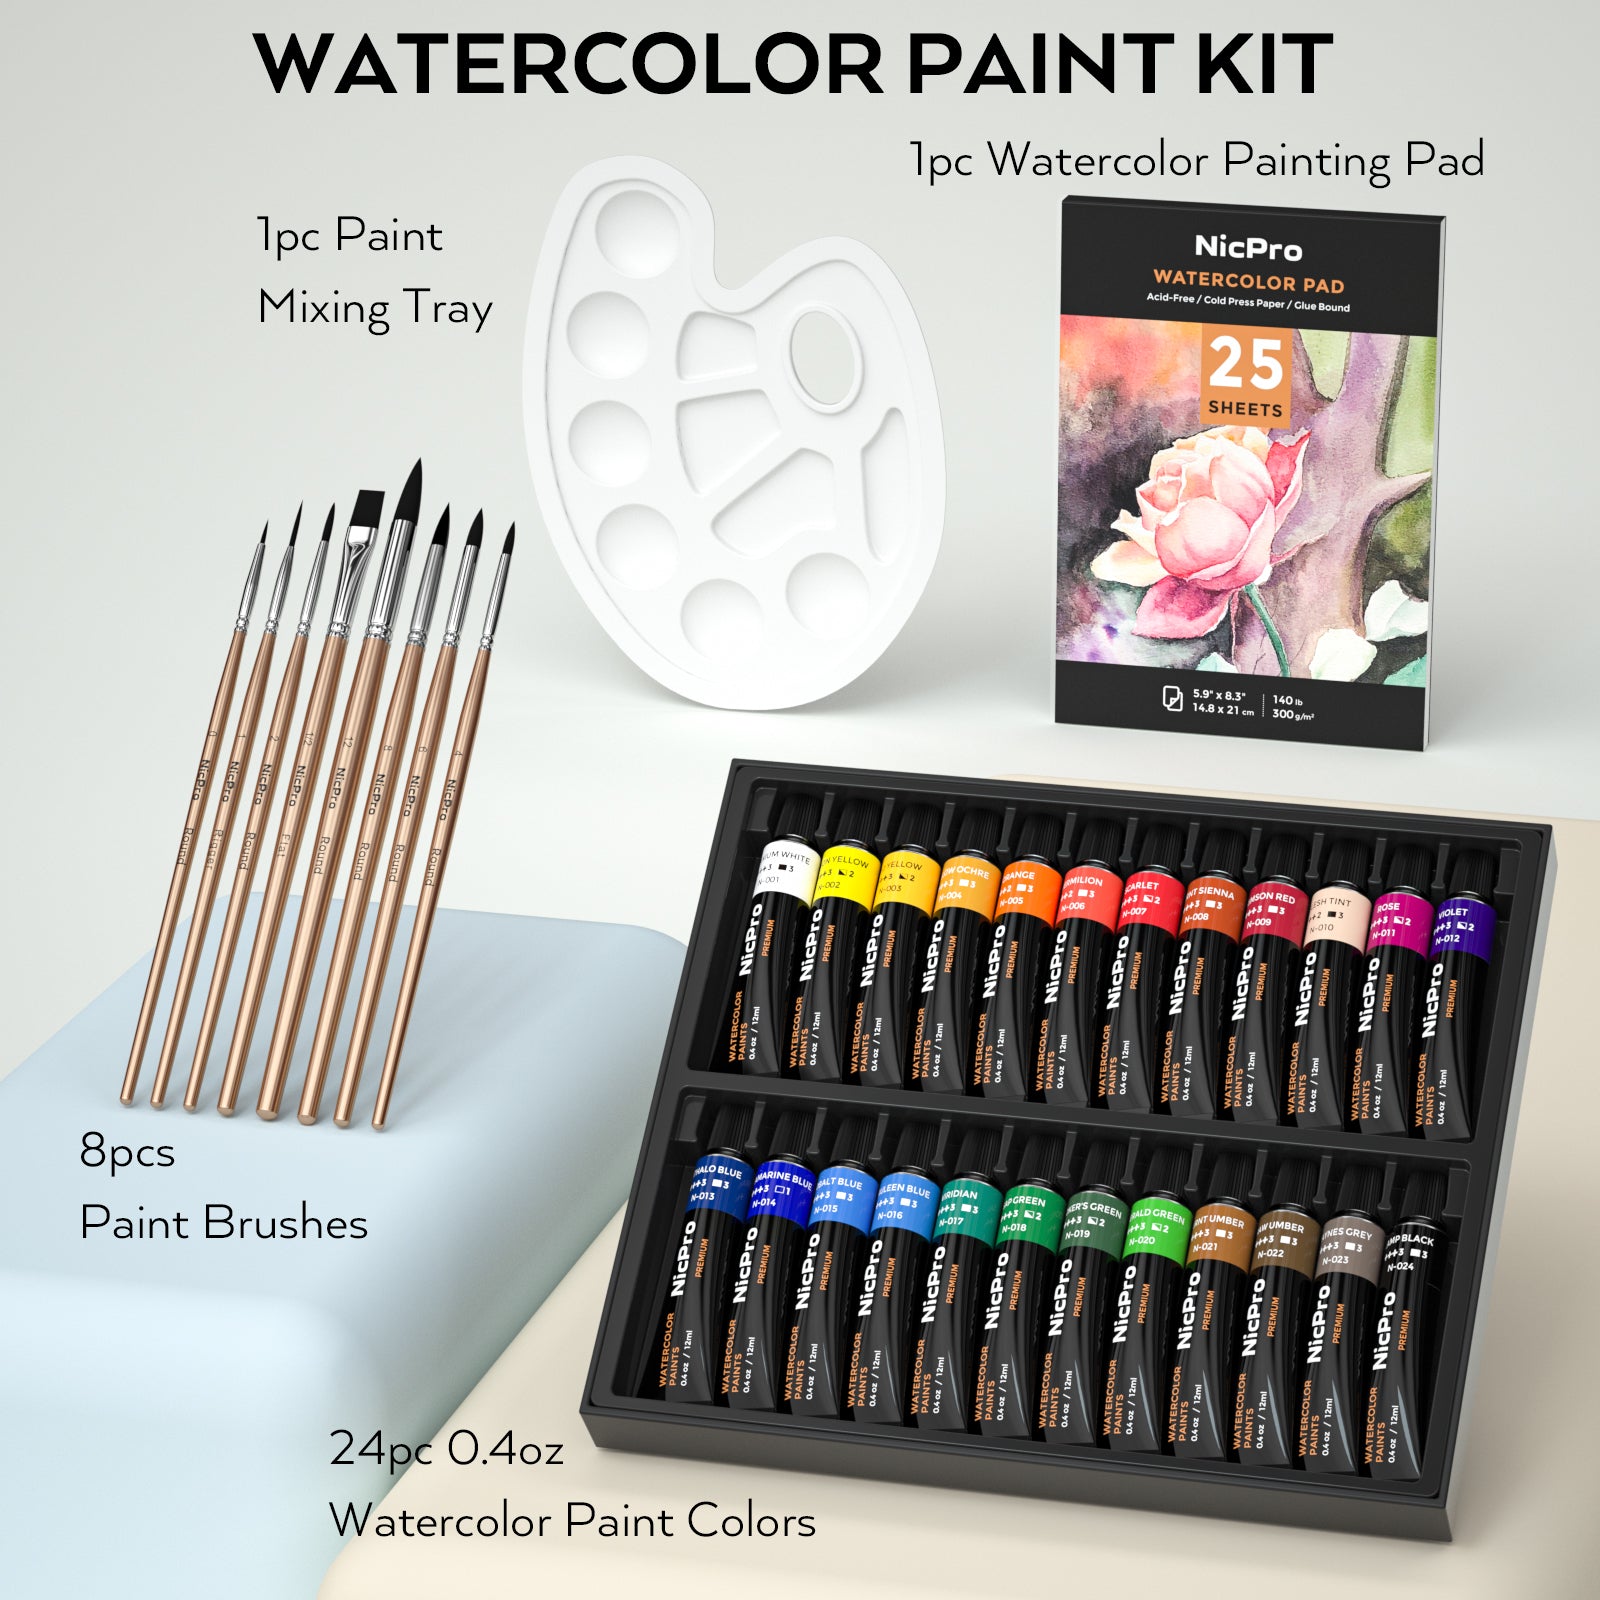  Professional Watercolor Paint Sets